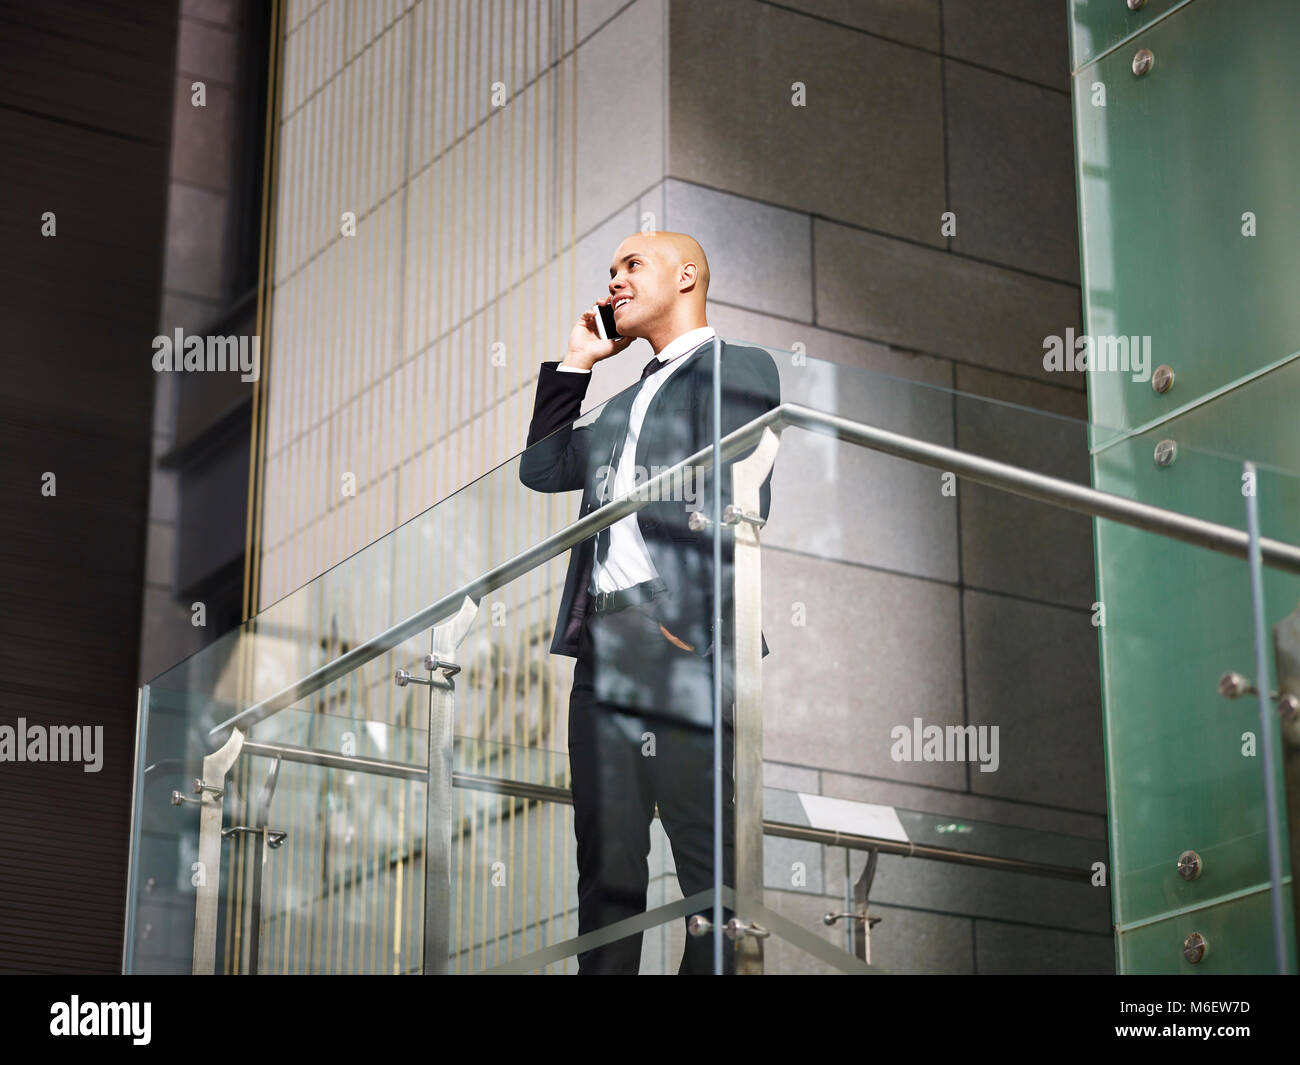 Latin American corporate executive business homme debout sur le haut d'un escalier d'effectuer un appel en utilisant votre téléphone mobile en immeuble de bureaux modernes, low angle view. Banque D'Images